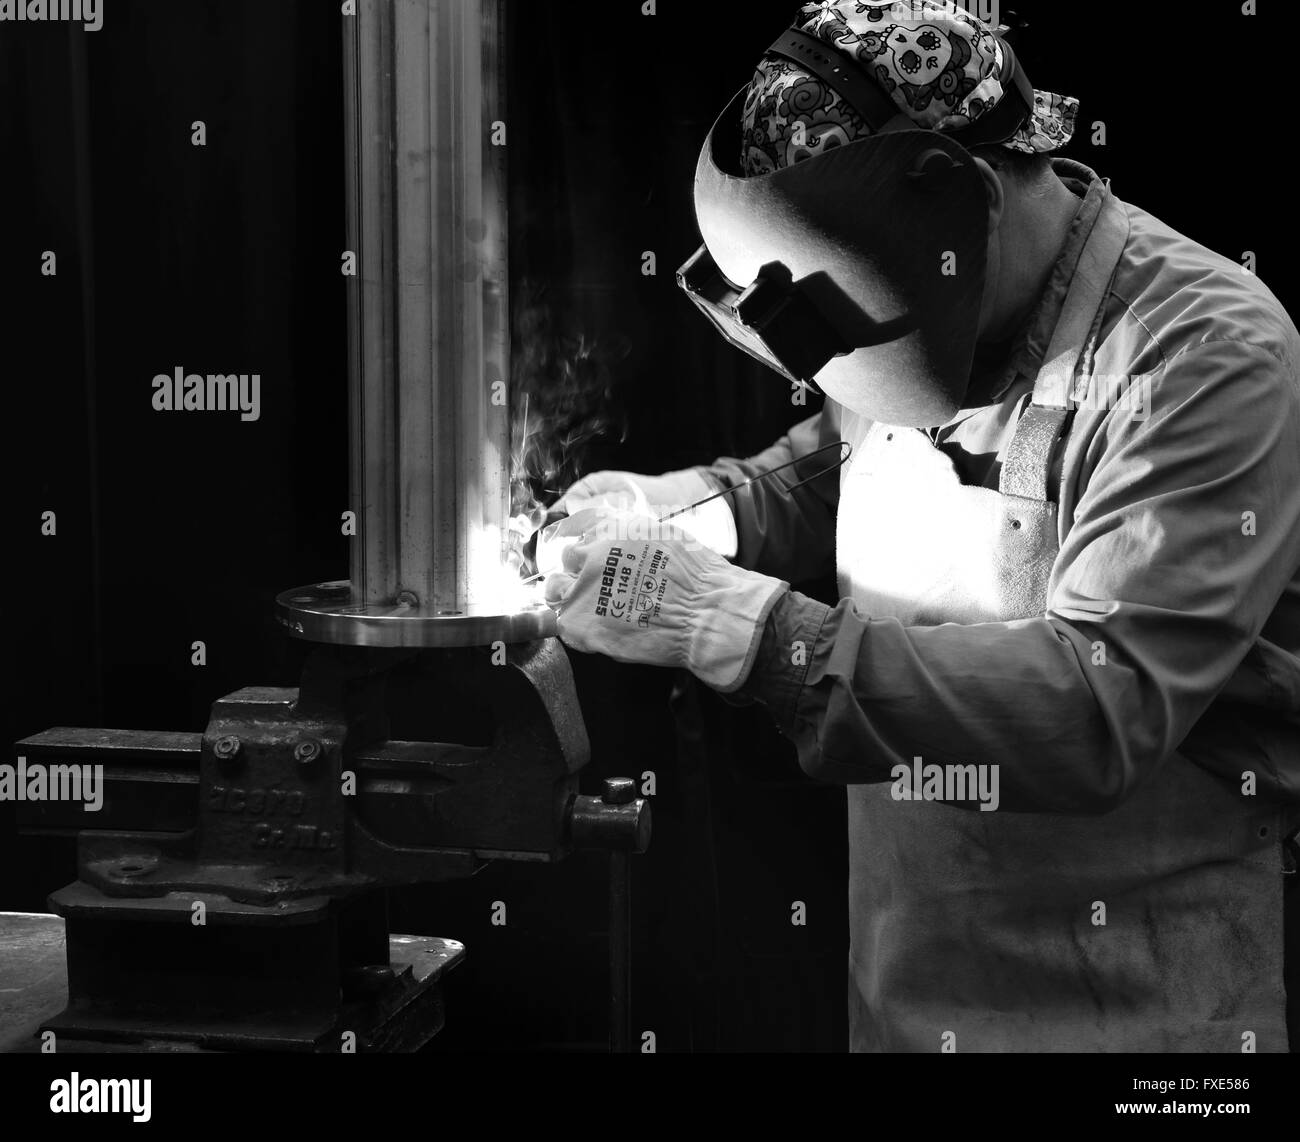 Welder, solderer, welding, soldering. Black and white. Stock Photo